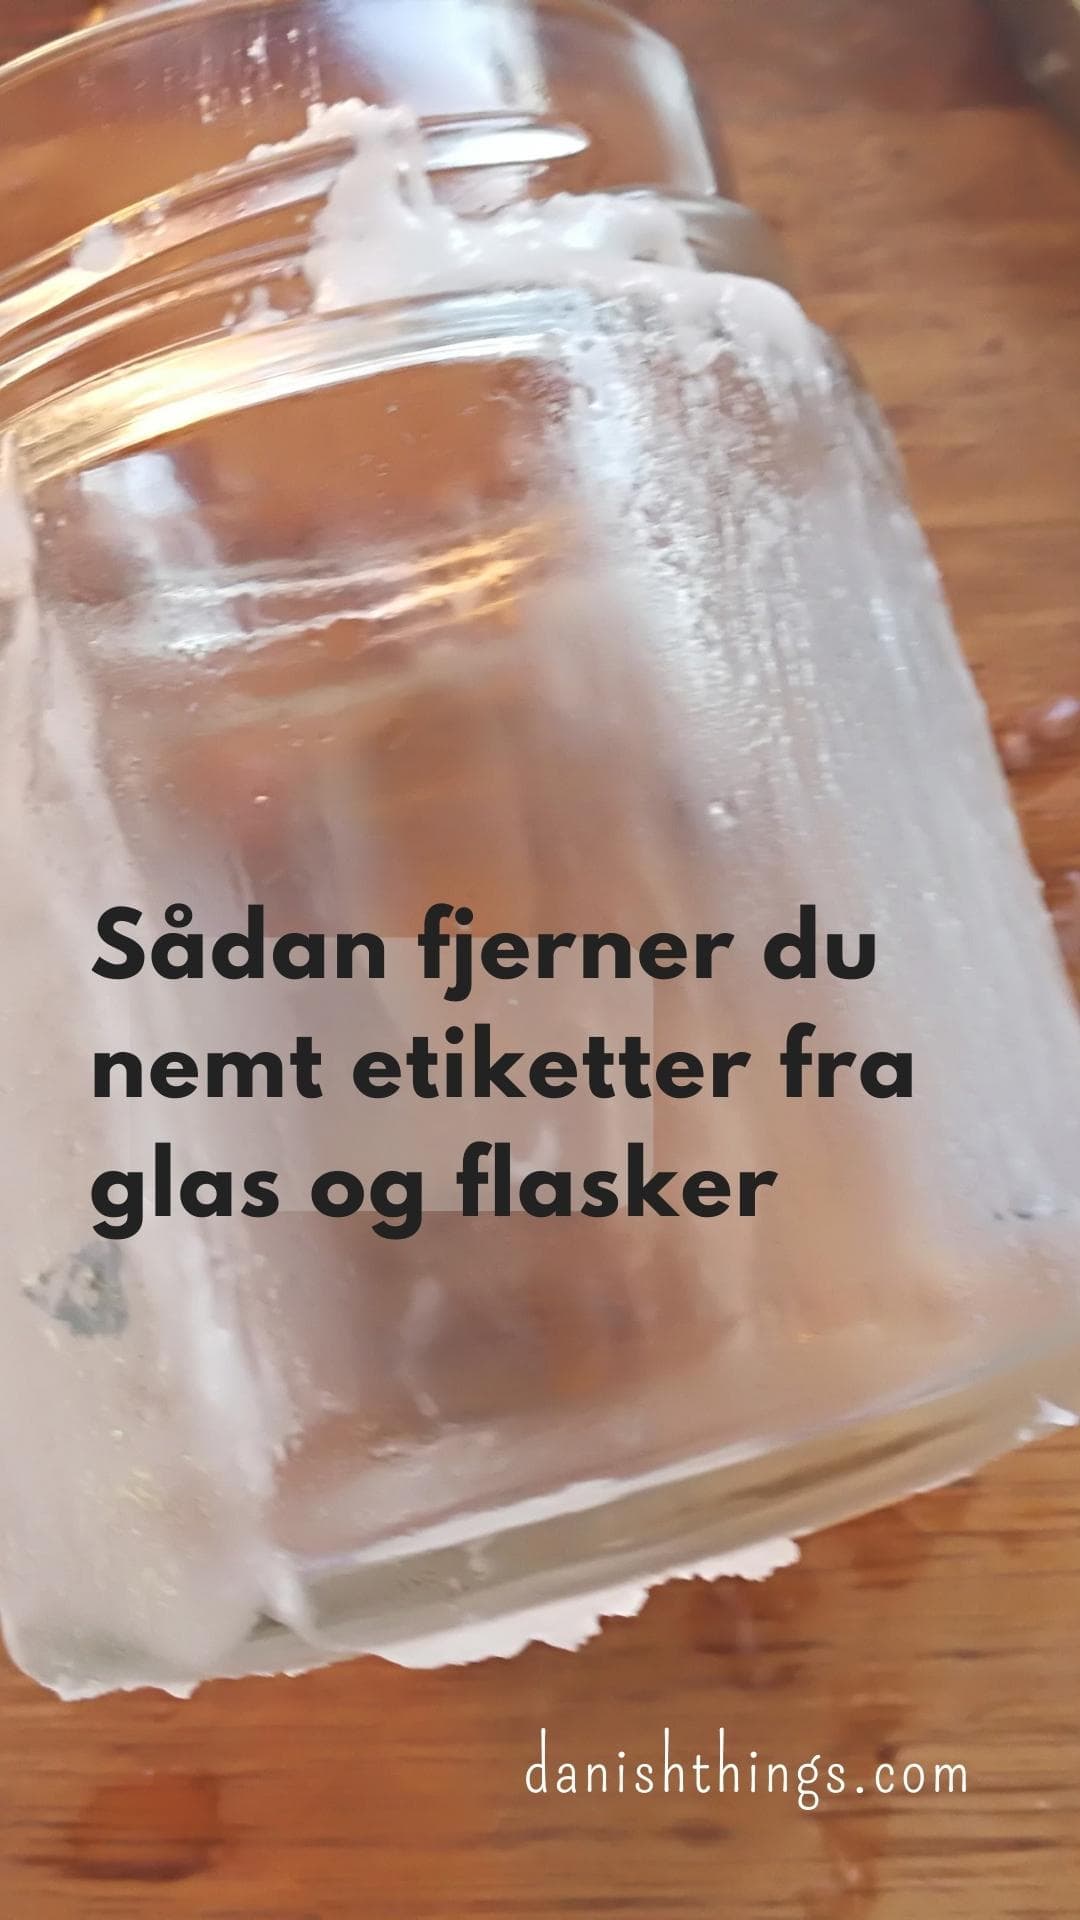 Skygge element psykologi Sådan fjerner du nemt etiketter fra glas og flasker - Danish Things